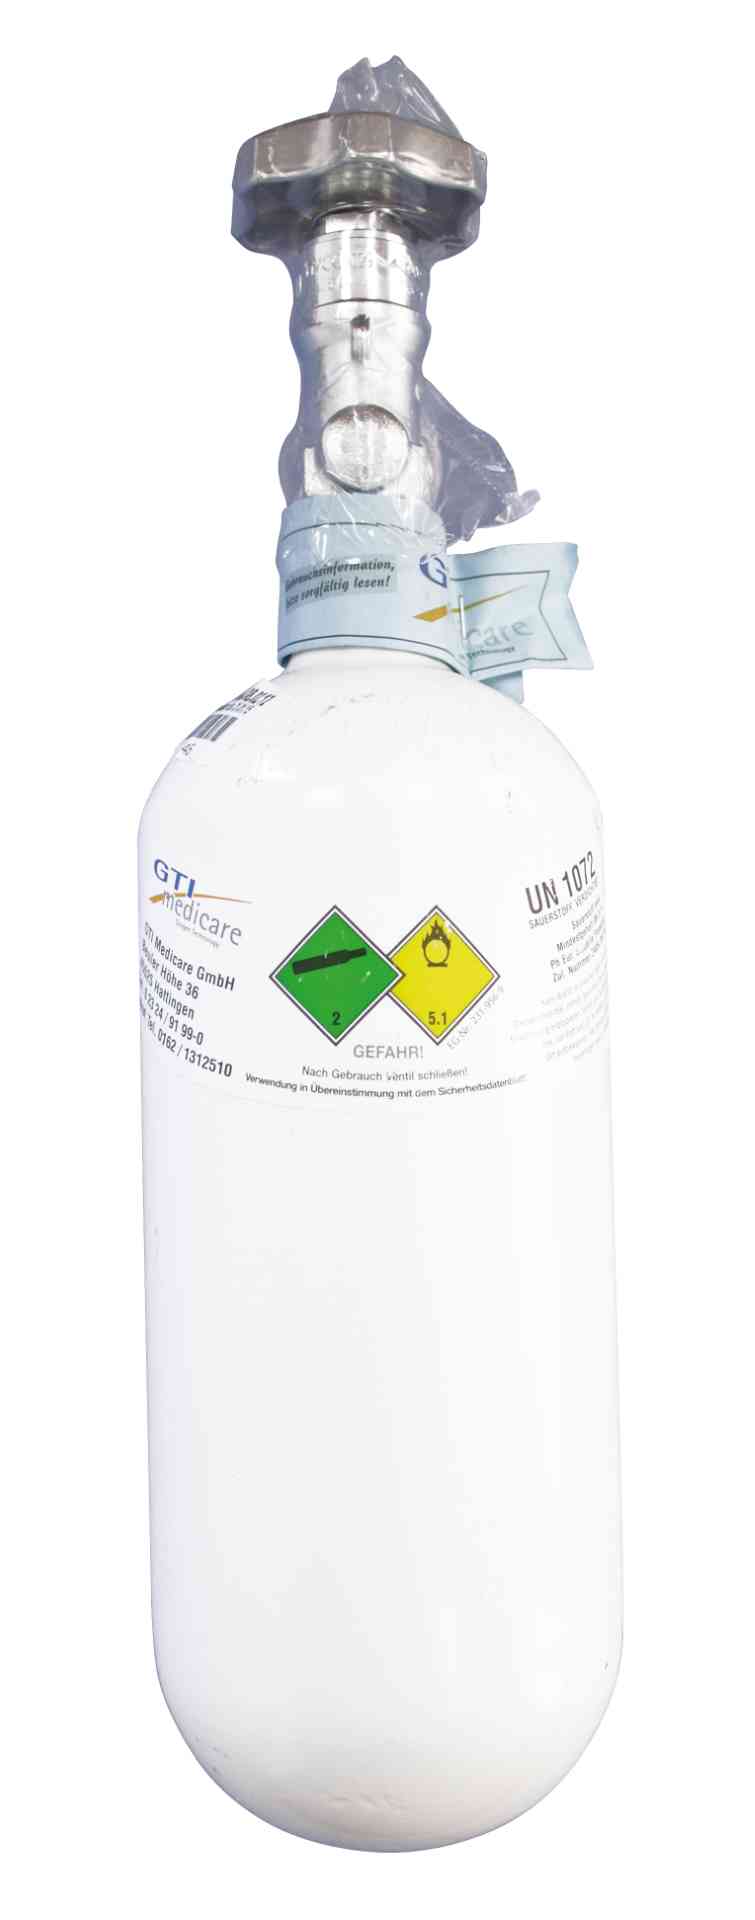 Sauerstoffflasche 0,8 Liter - Stahl